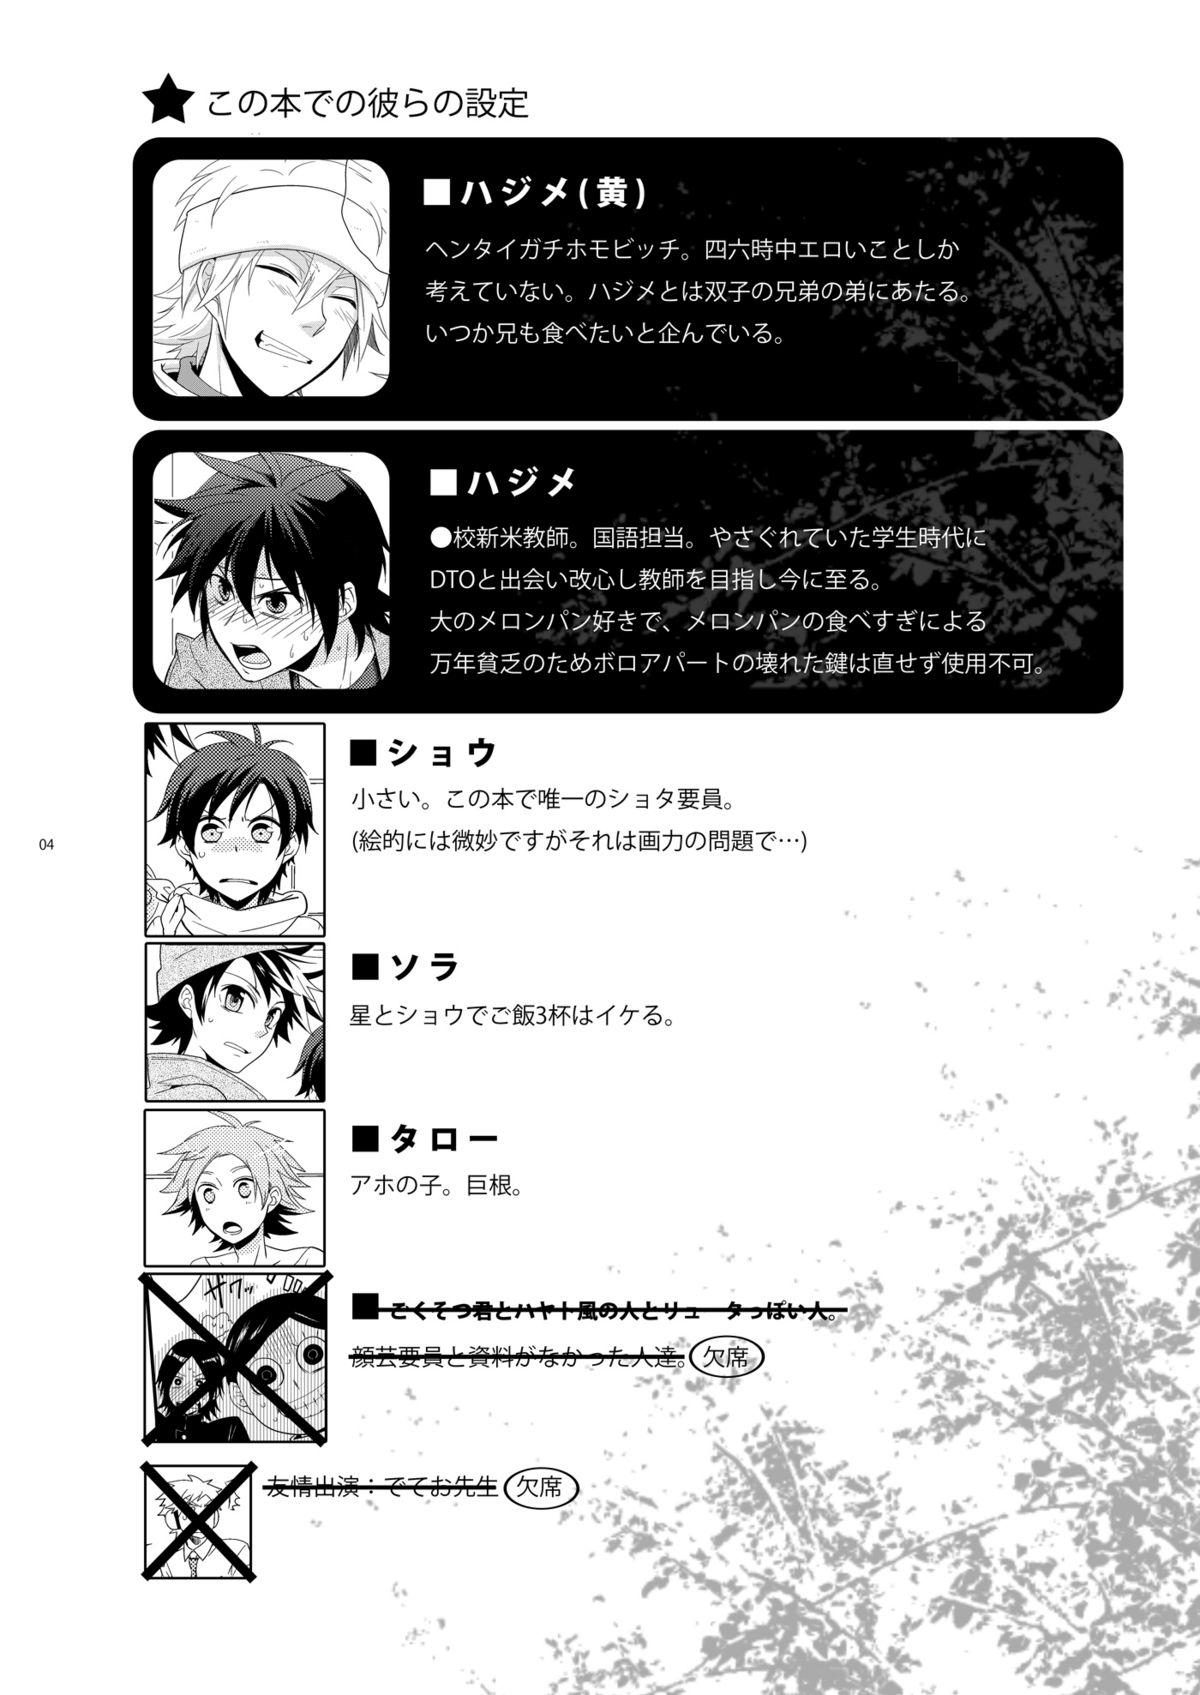 Lima Hajime-sensei to Otona no Hoken Taiiku 2 - Popn music Novinhas - Page 3